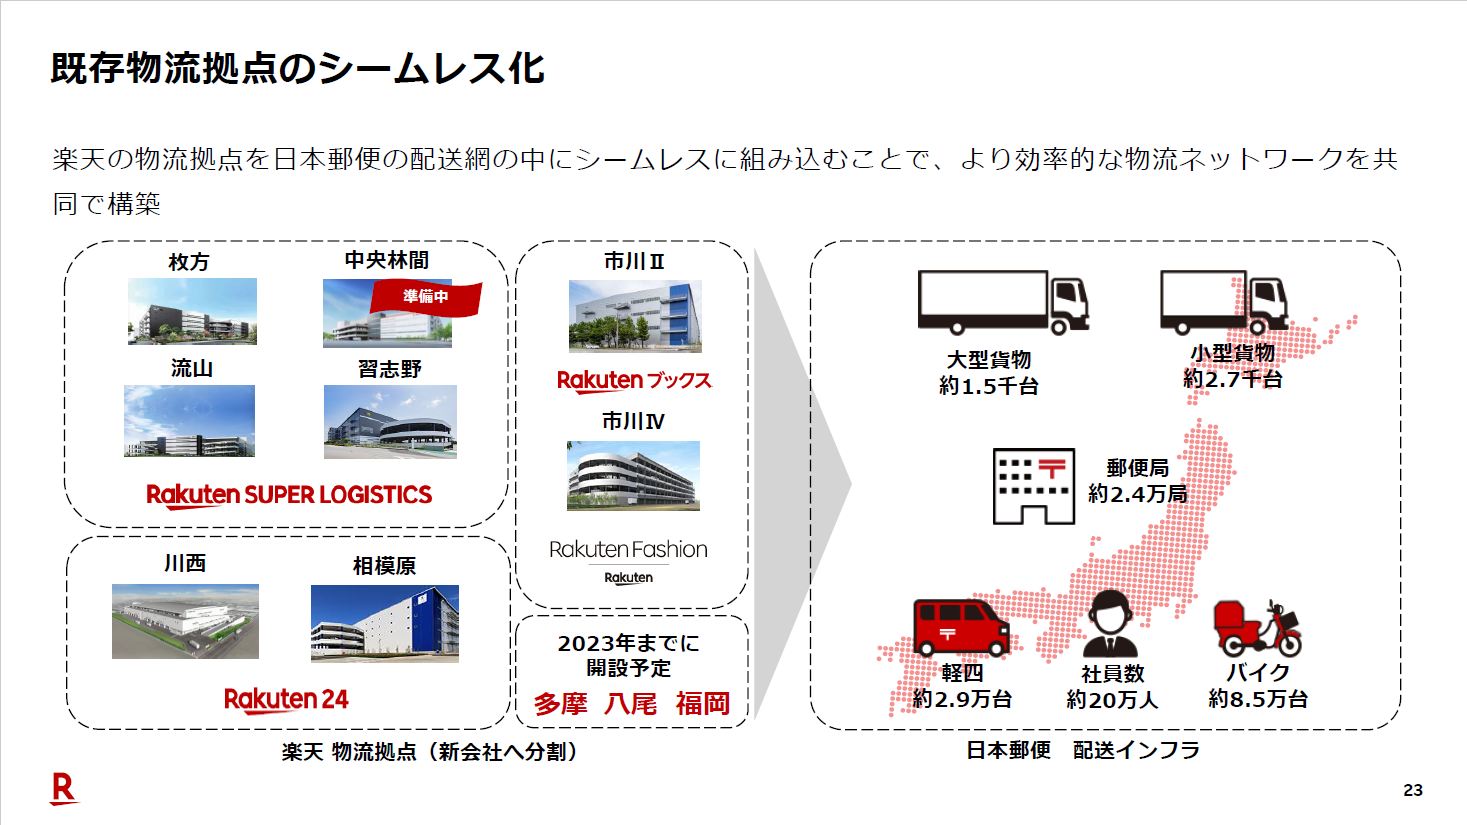 楽天グループは日本郵便との合弁会社に物流事業を移し、日本郵便のリソースを活用して効率的な物流ネットワークを構築するとしている